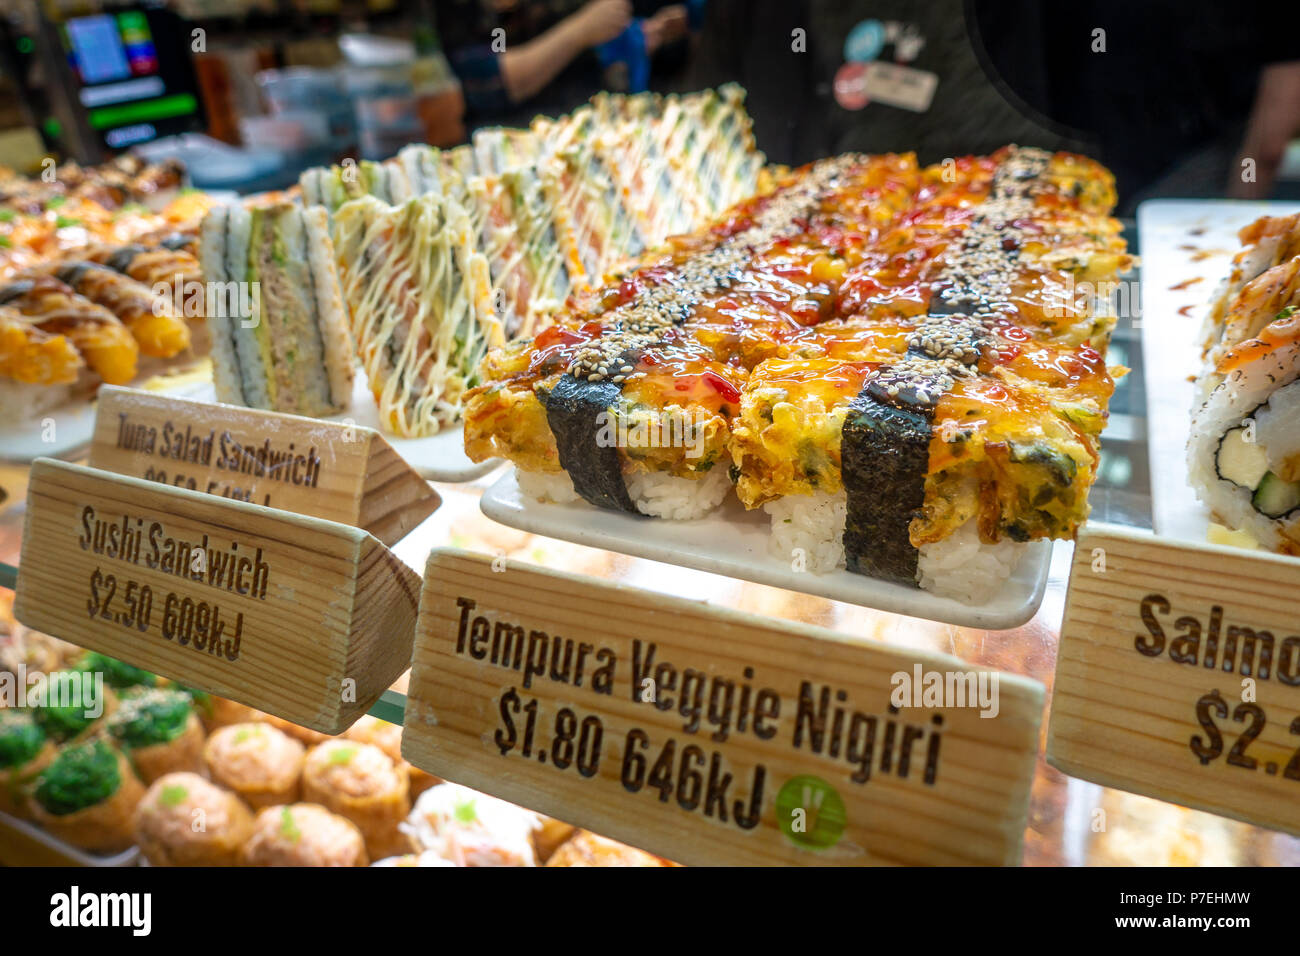 Différents types de sushi affiche dans un compteur par nom anglais, les calories et le prix indiqué sur chaque étiquette. Melbourne, Victoria Australie. Banque D'Images